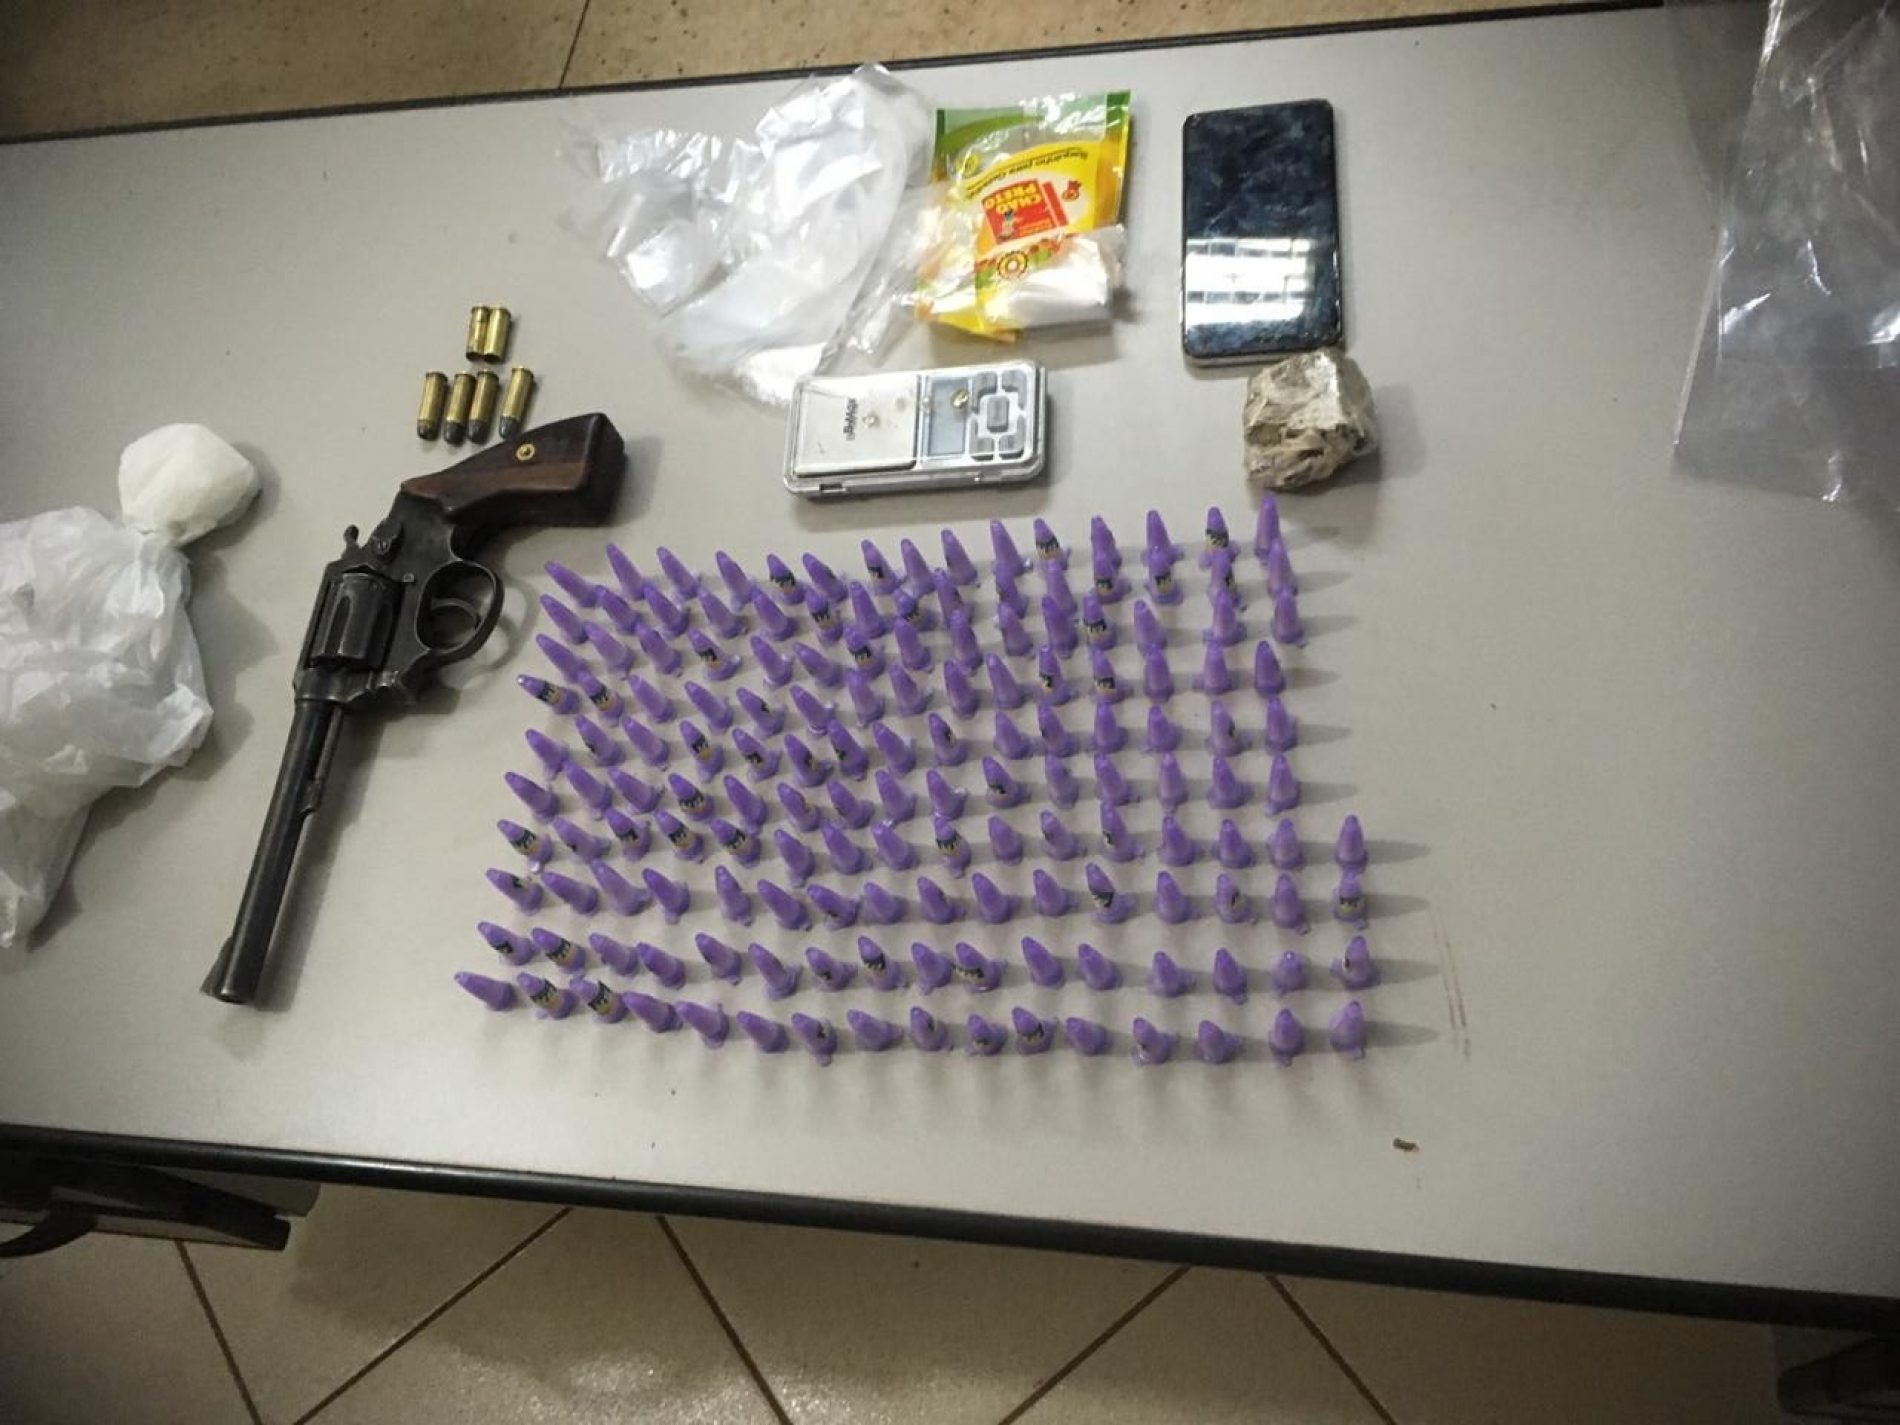 BARRETOS: Polícia prende dois e apreende arma, cocaína, e diversos objetos relacionados ao tráfico de drogas